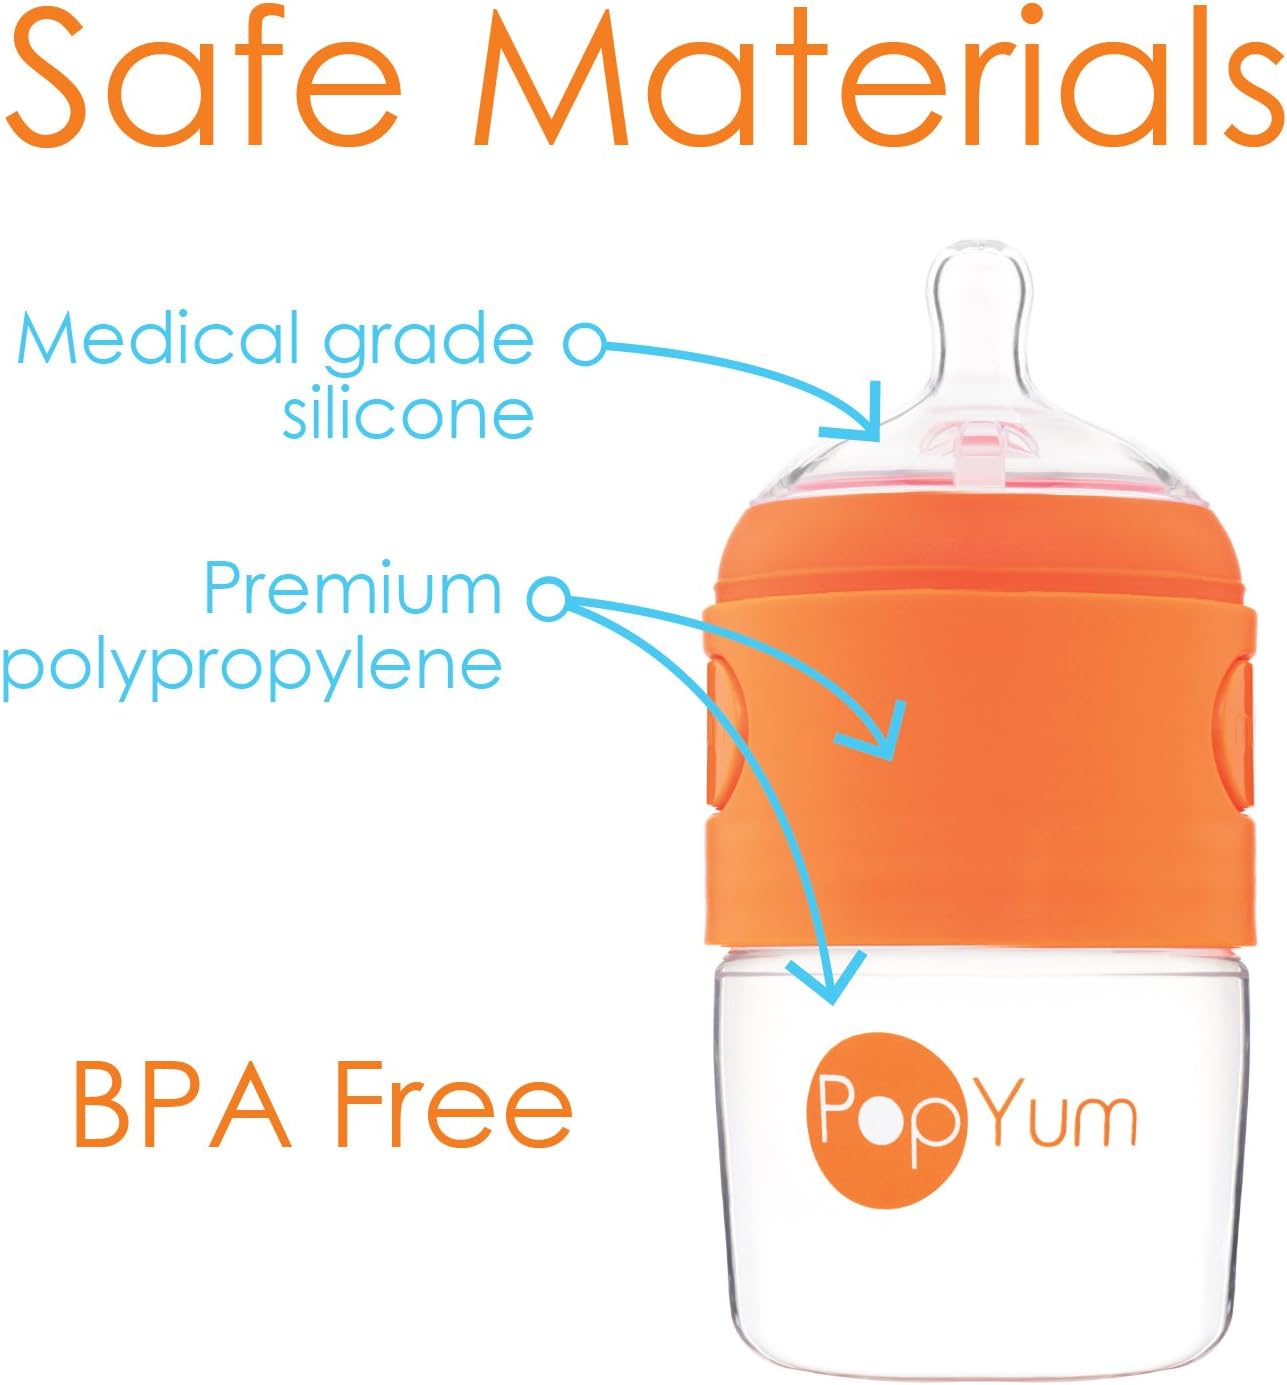 PopYum Anti-Colic Formula Making/Mixing/Dispenser Baby Bottles- Pack of 2 (9oz)